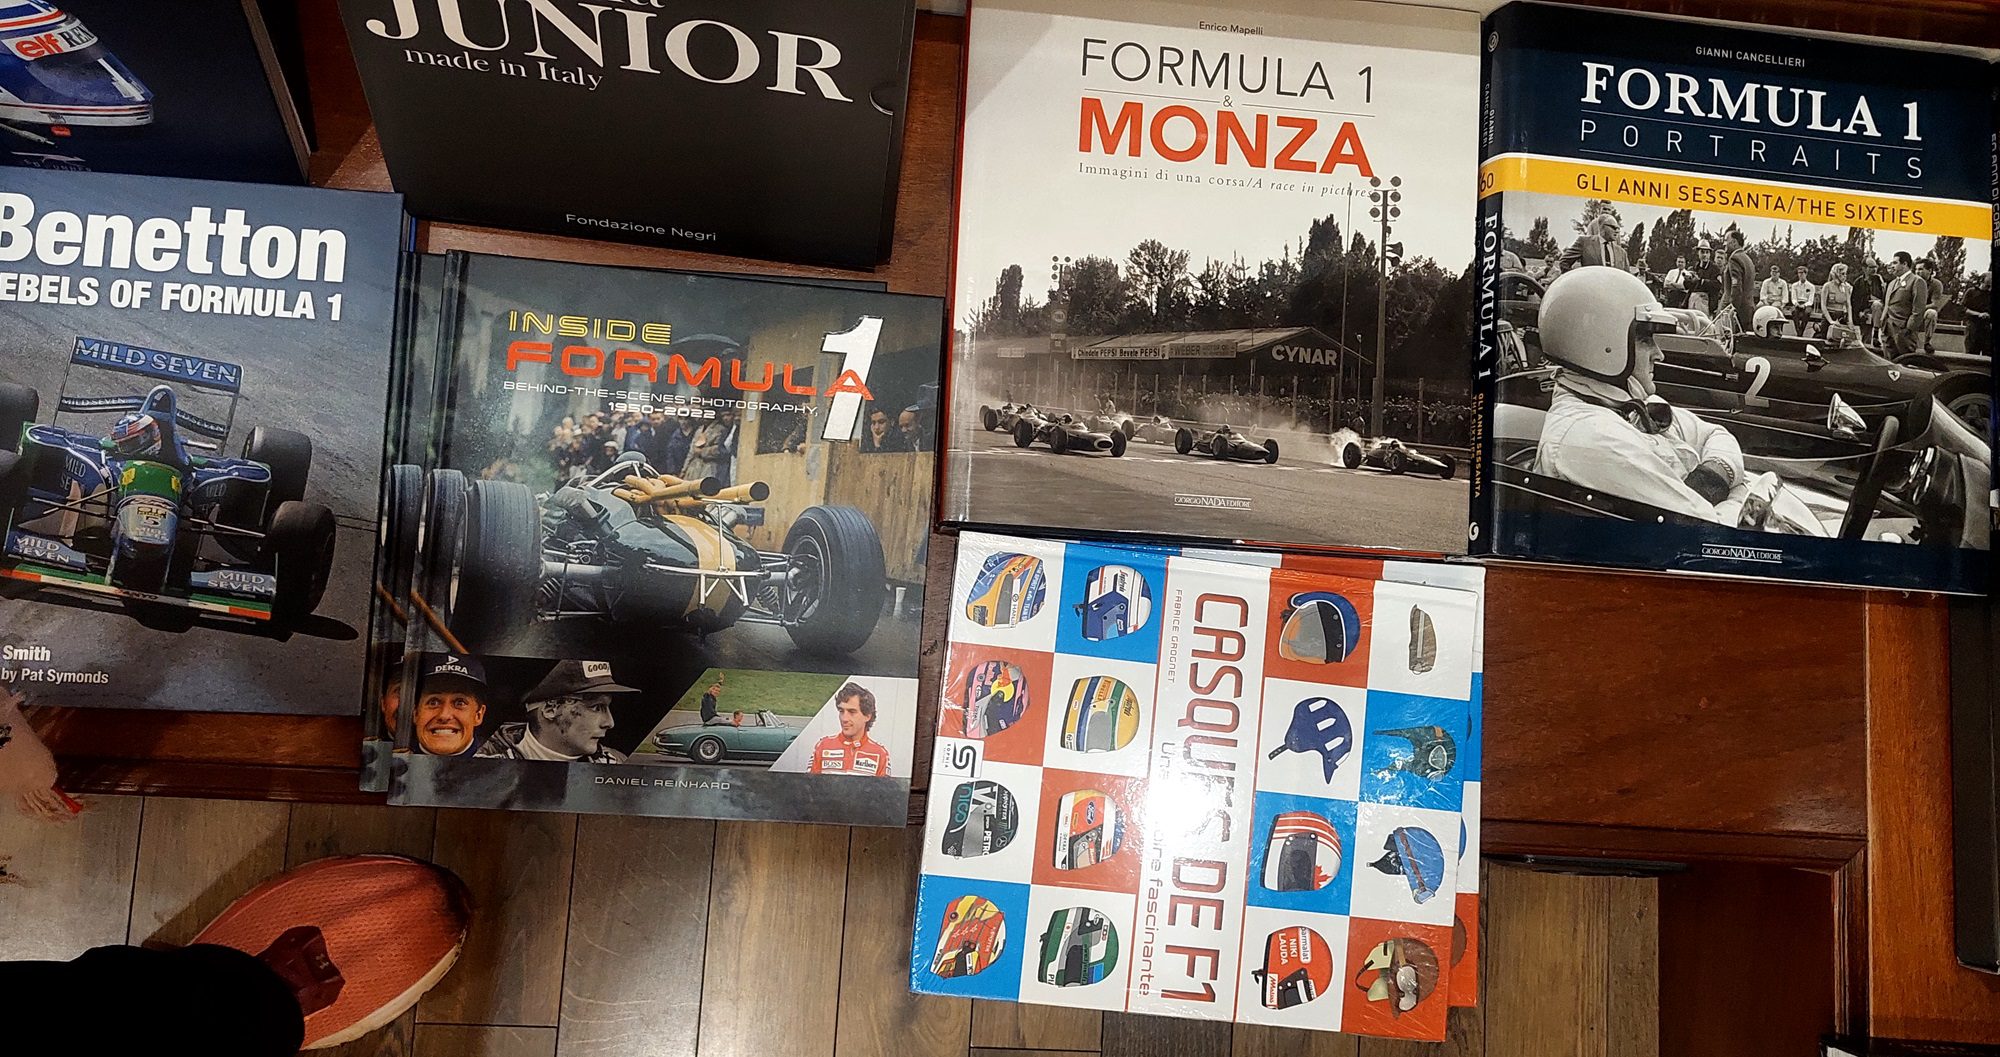 Conheça a livraria exclusiva sobre esporte a motor na Itália